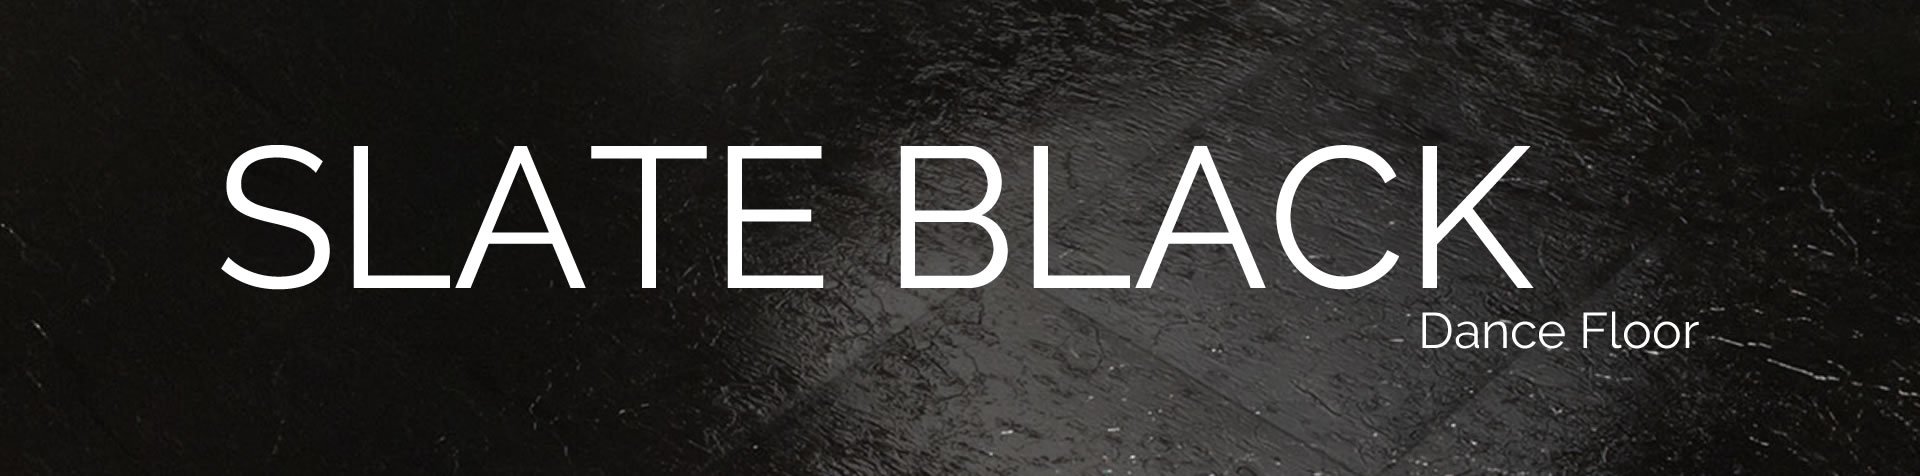 slate-black-slide